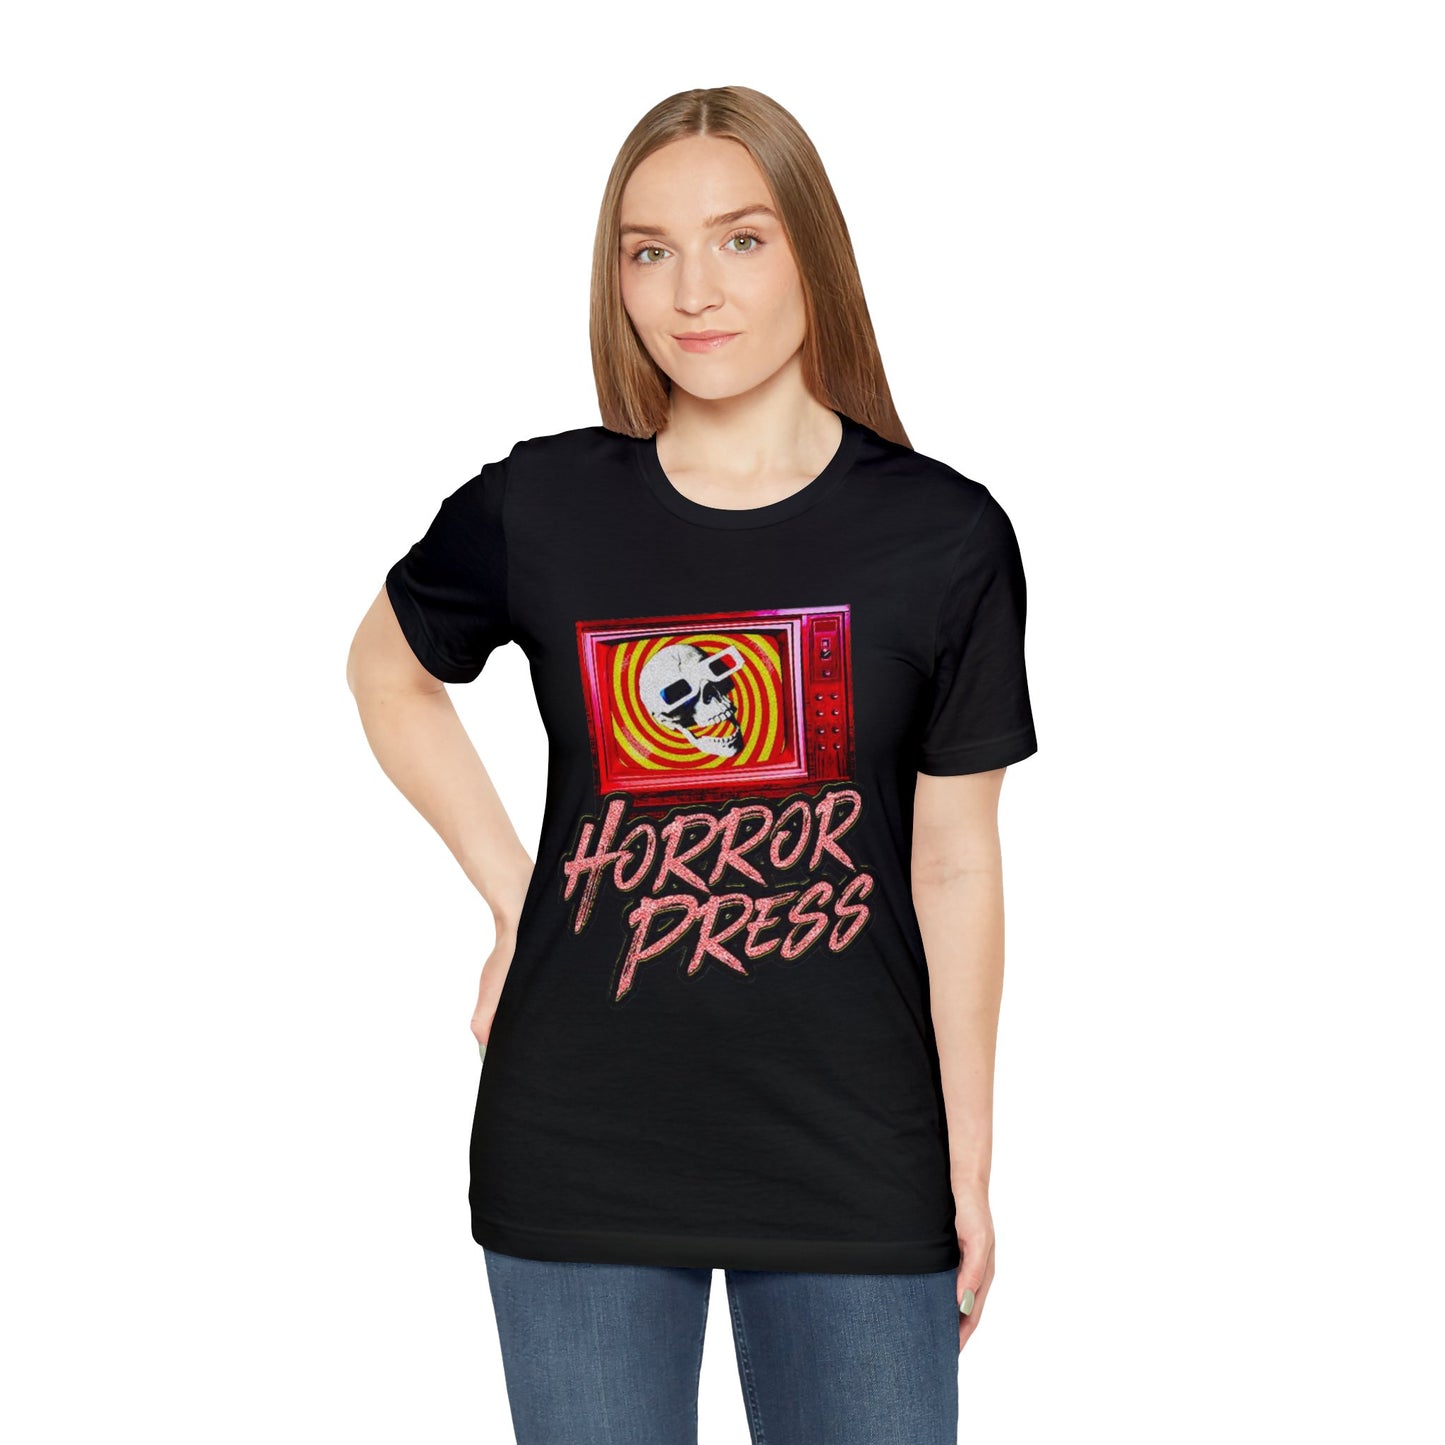 Horror Press Skully T-Shirt - Horror Press Black Tee - Horror Movie Fan Gift  - Horror Press Horror Fan Shirt - Scary Movie Fan Shirt - Skull on Black T-Shirt - Black and Pink Skull T-Shirt